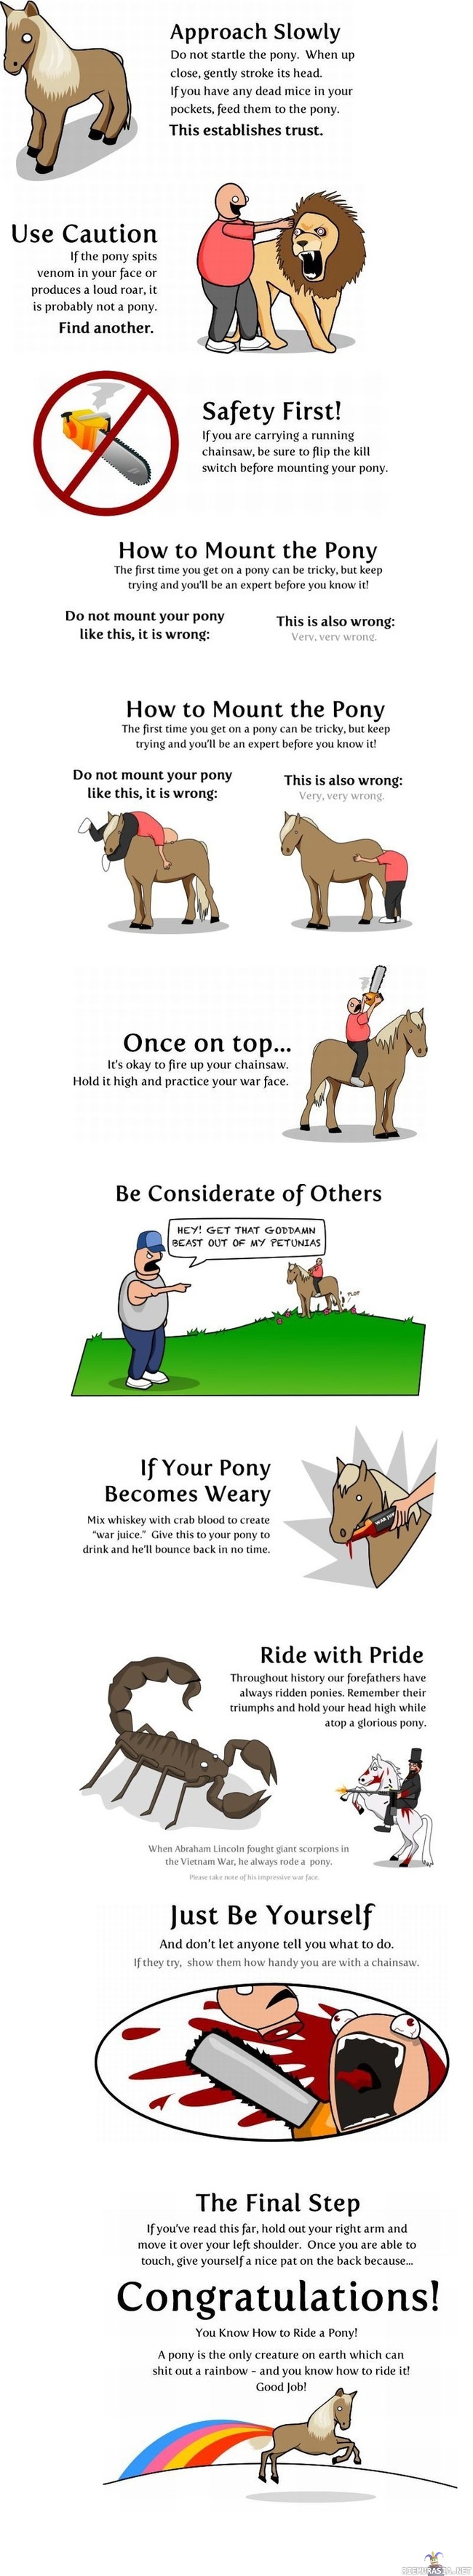 Miten ratsastetaan ponilla